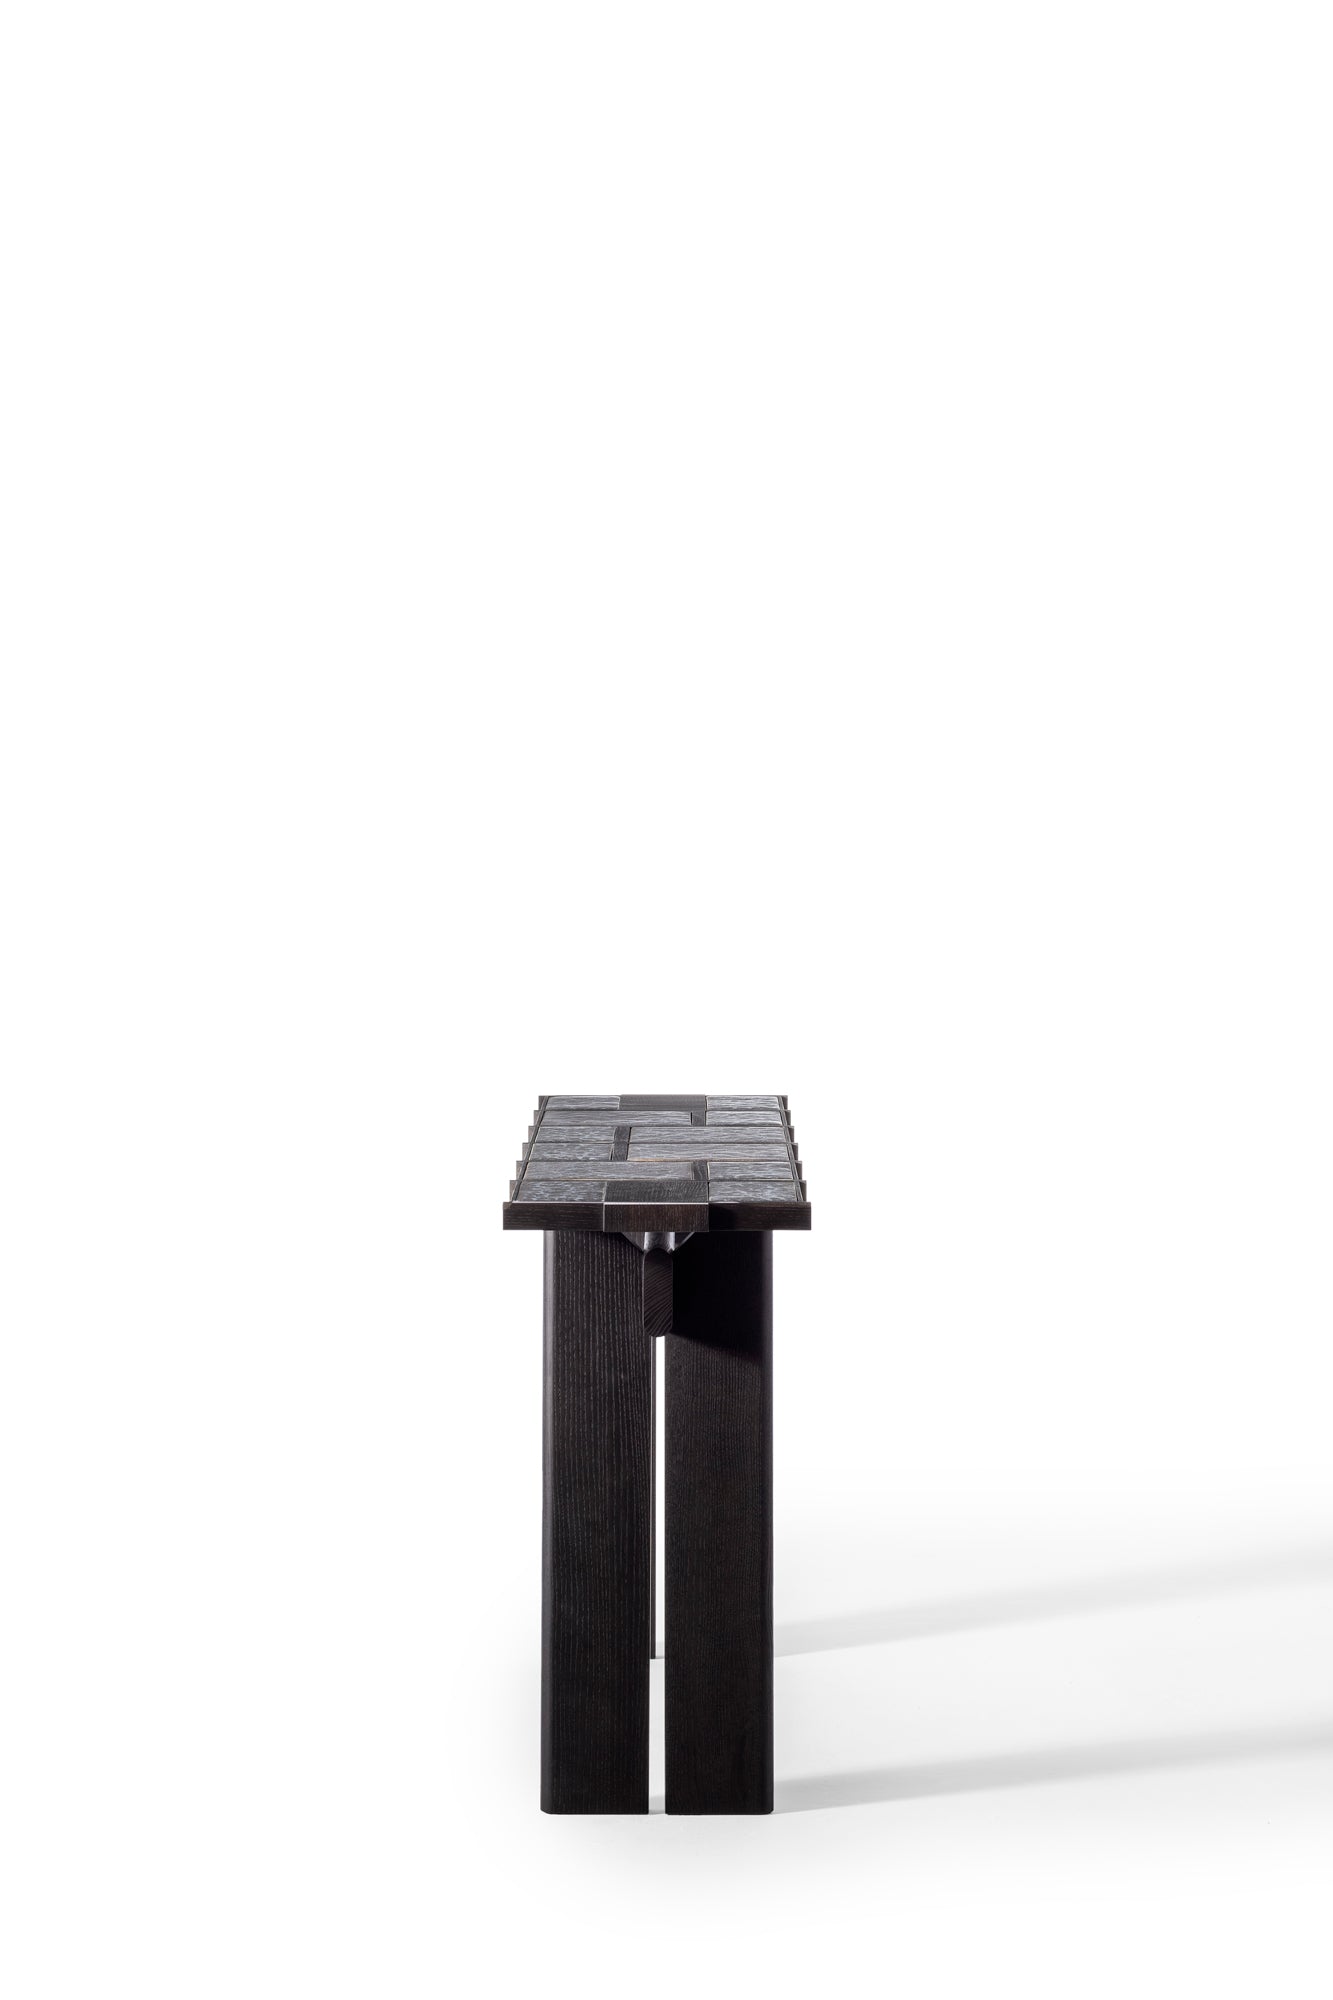 Meuble console Terzo frêne teinté noir et carreaux céramiques émaillés